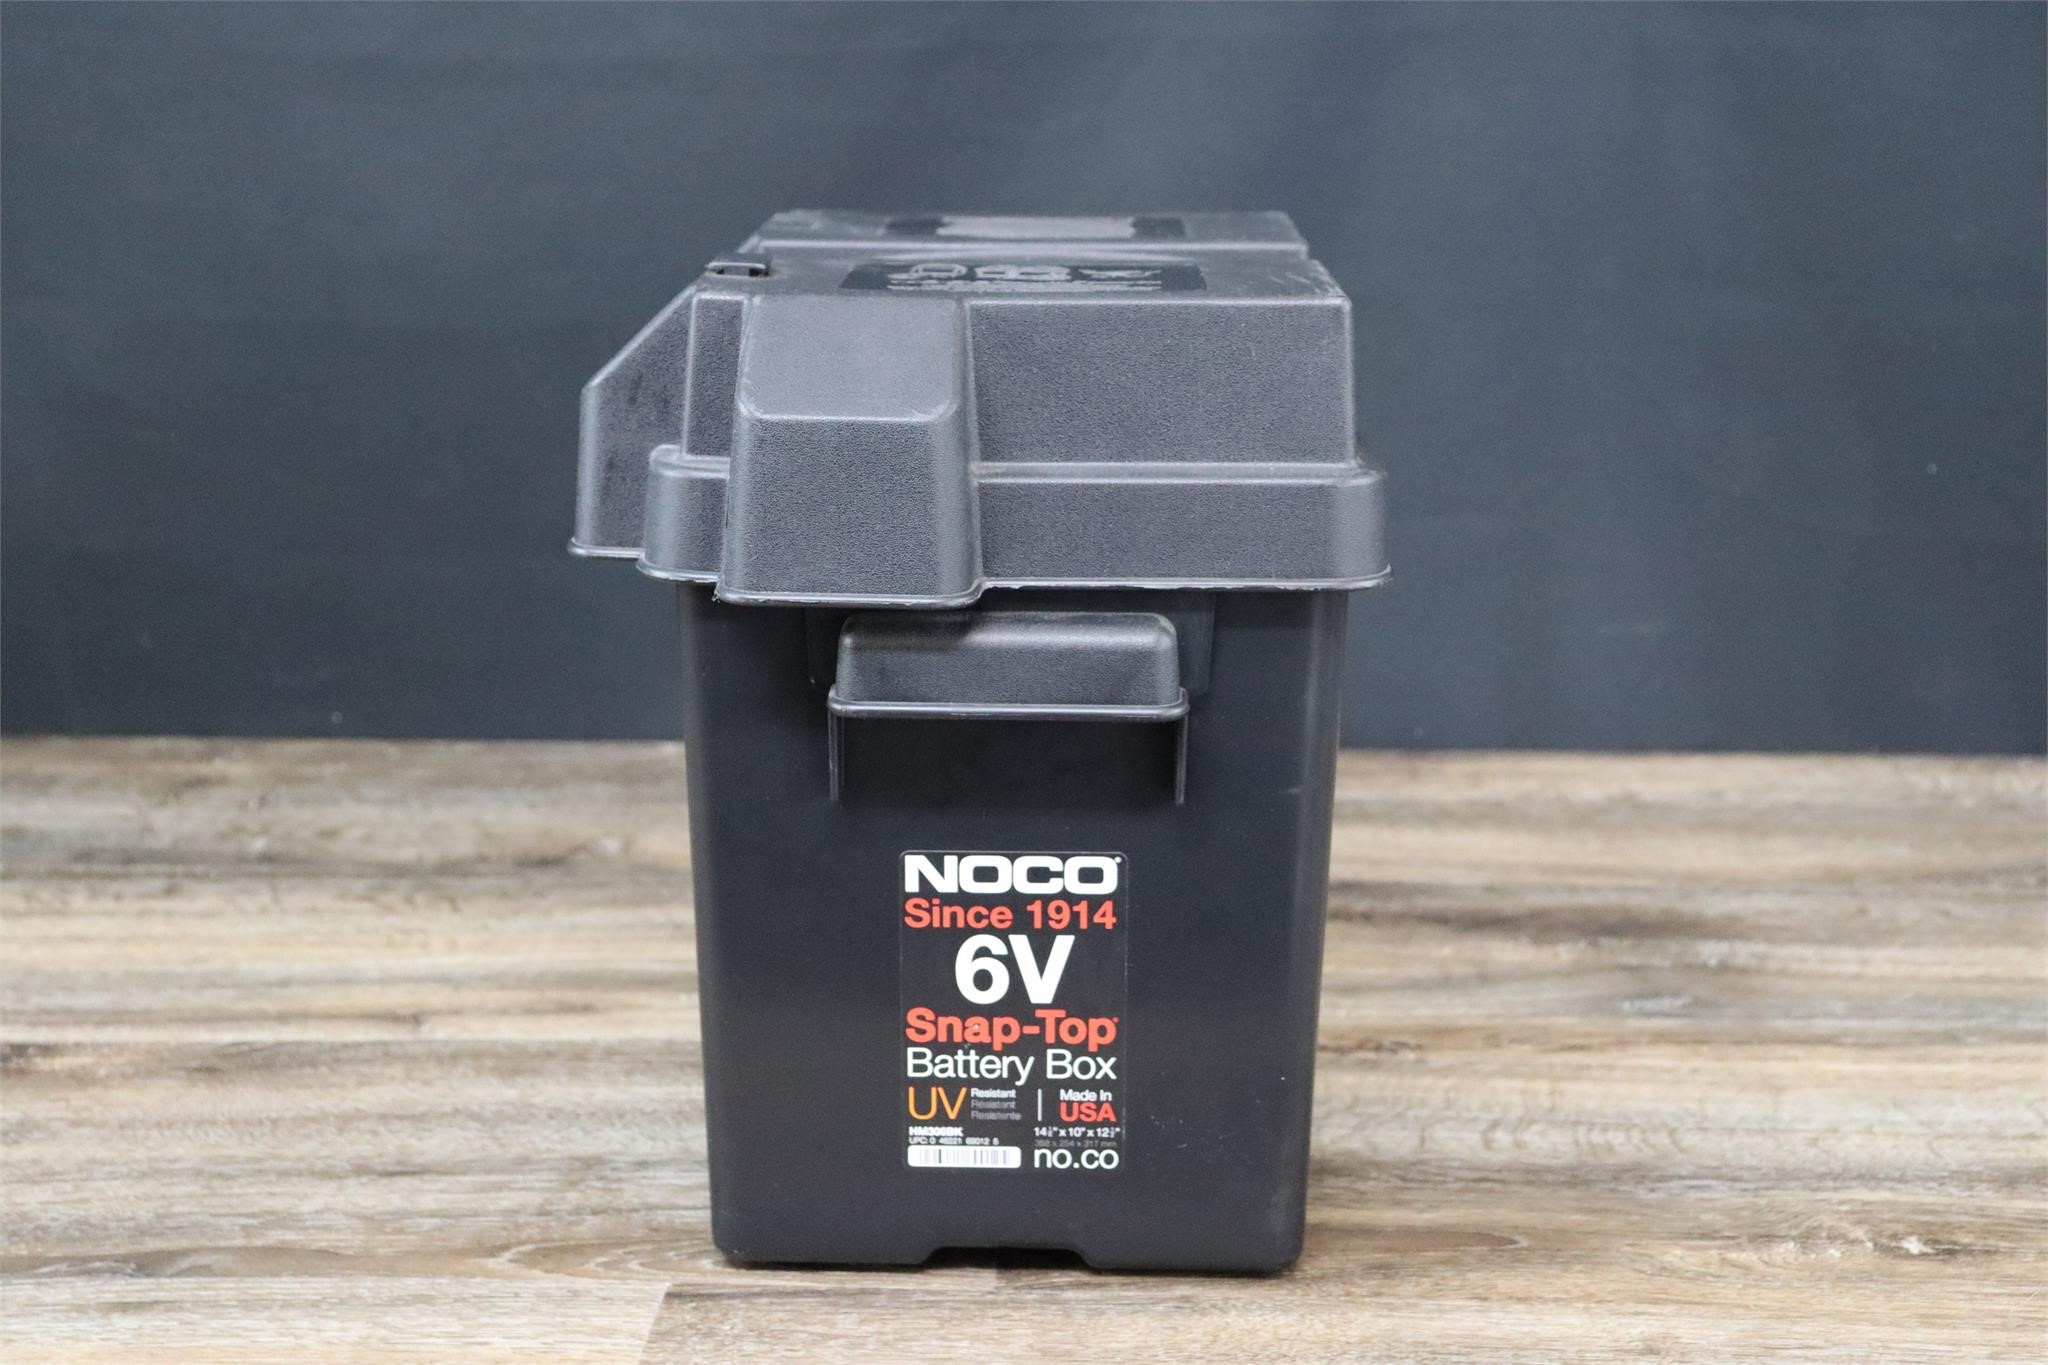 Novo 6V Marine Battery Box - Snap Top